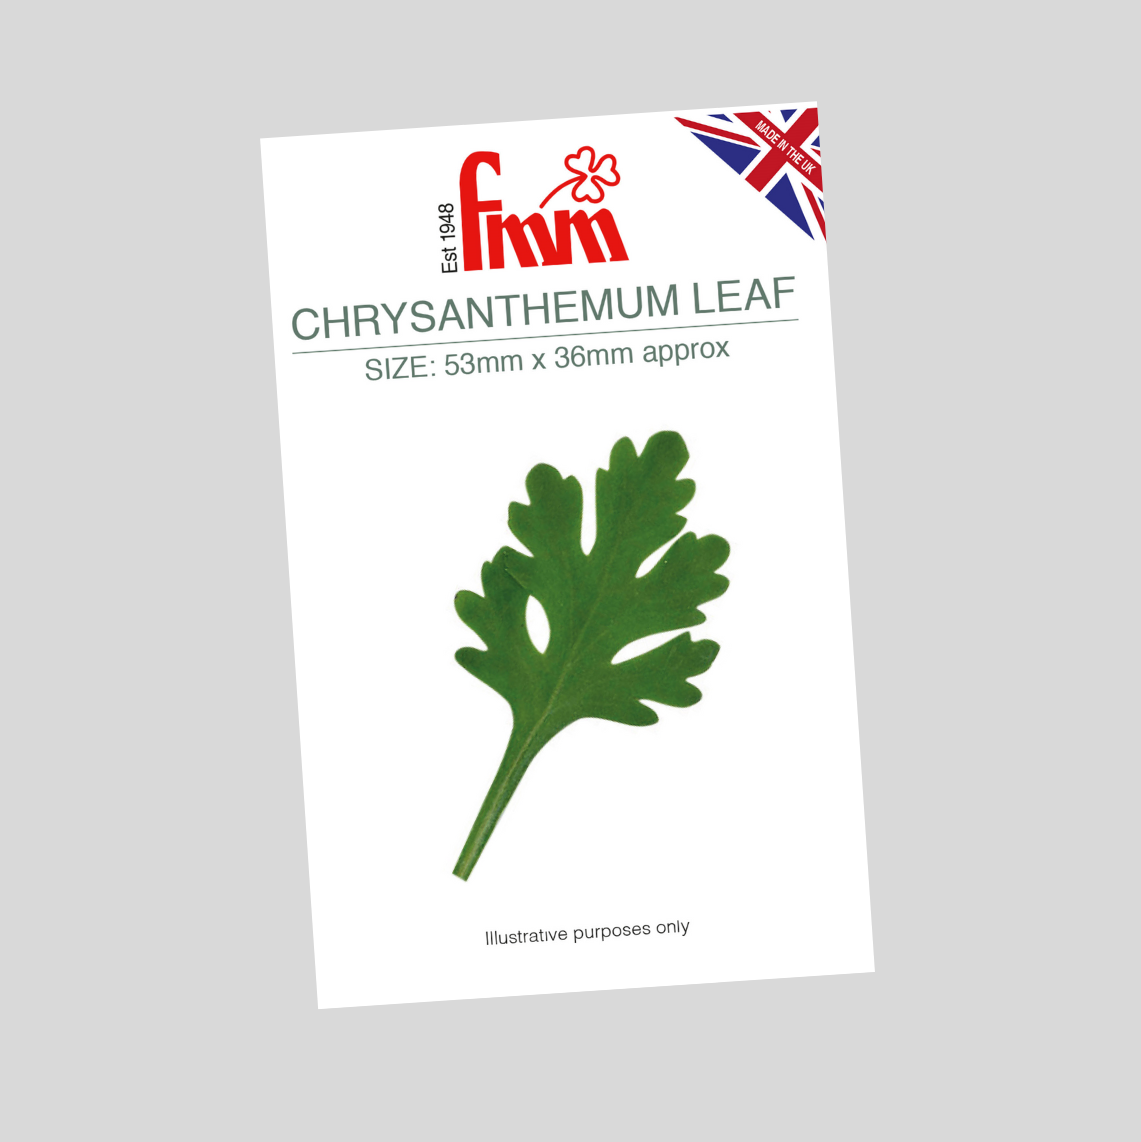 Chrysanthemum Leaf Cutter - FMM Sugarcraft